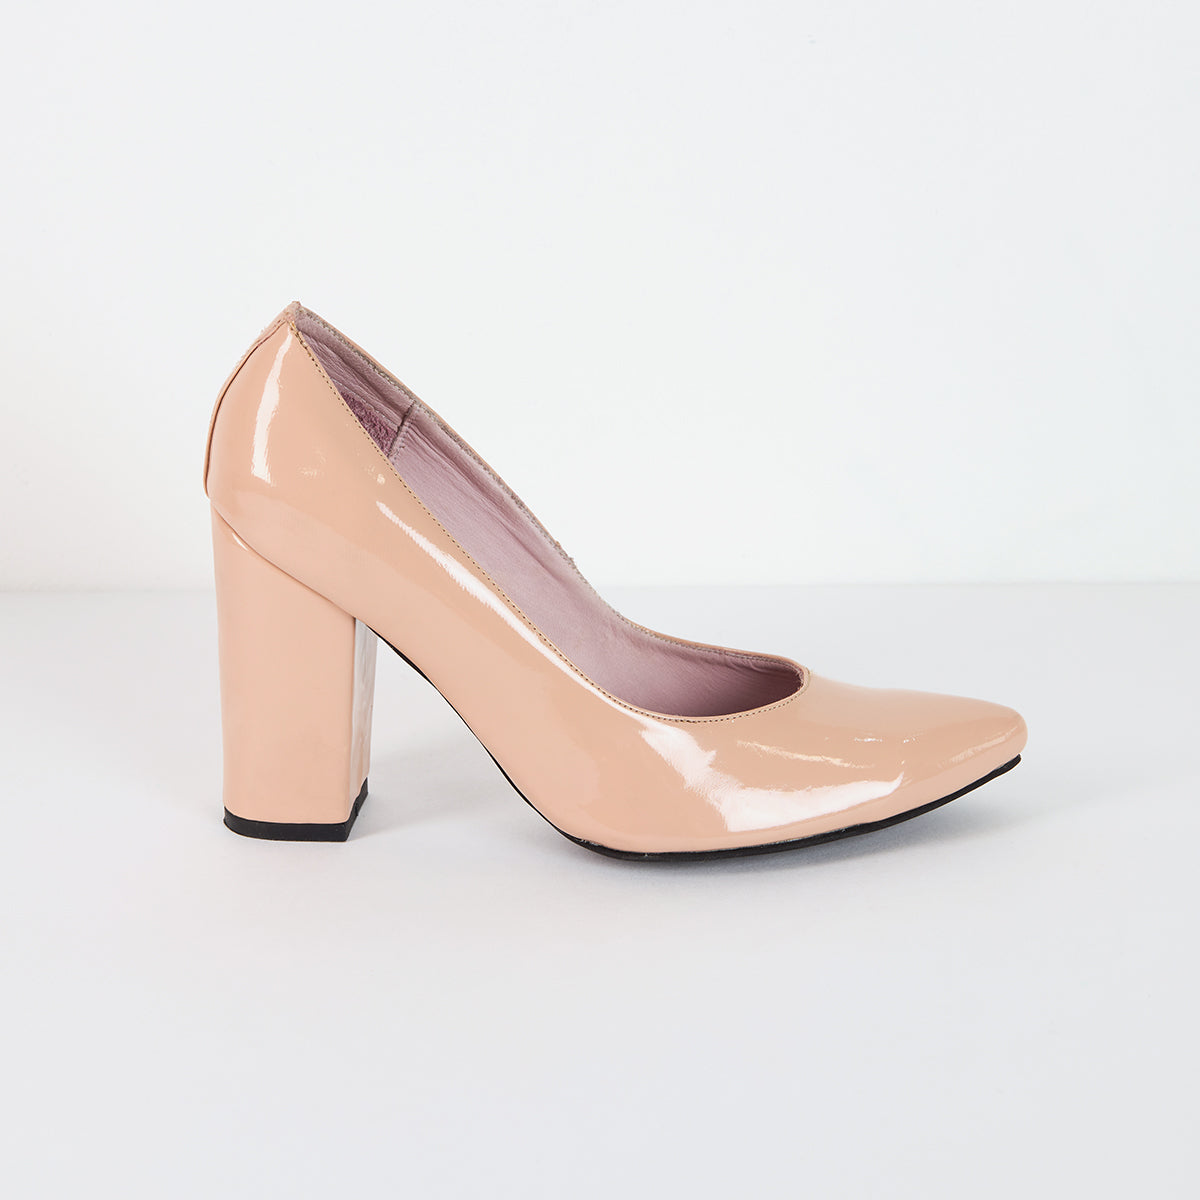 Metallic Pink Stilettos - Size 37